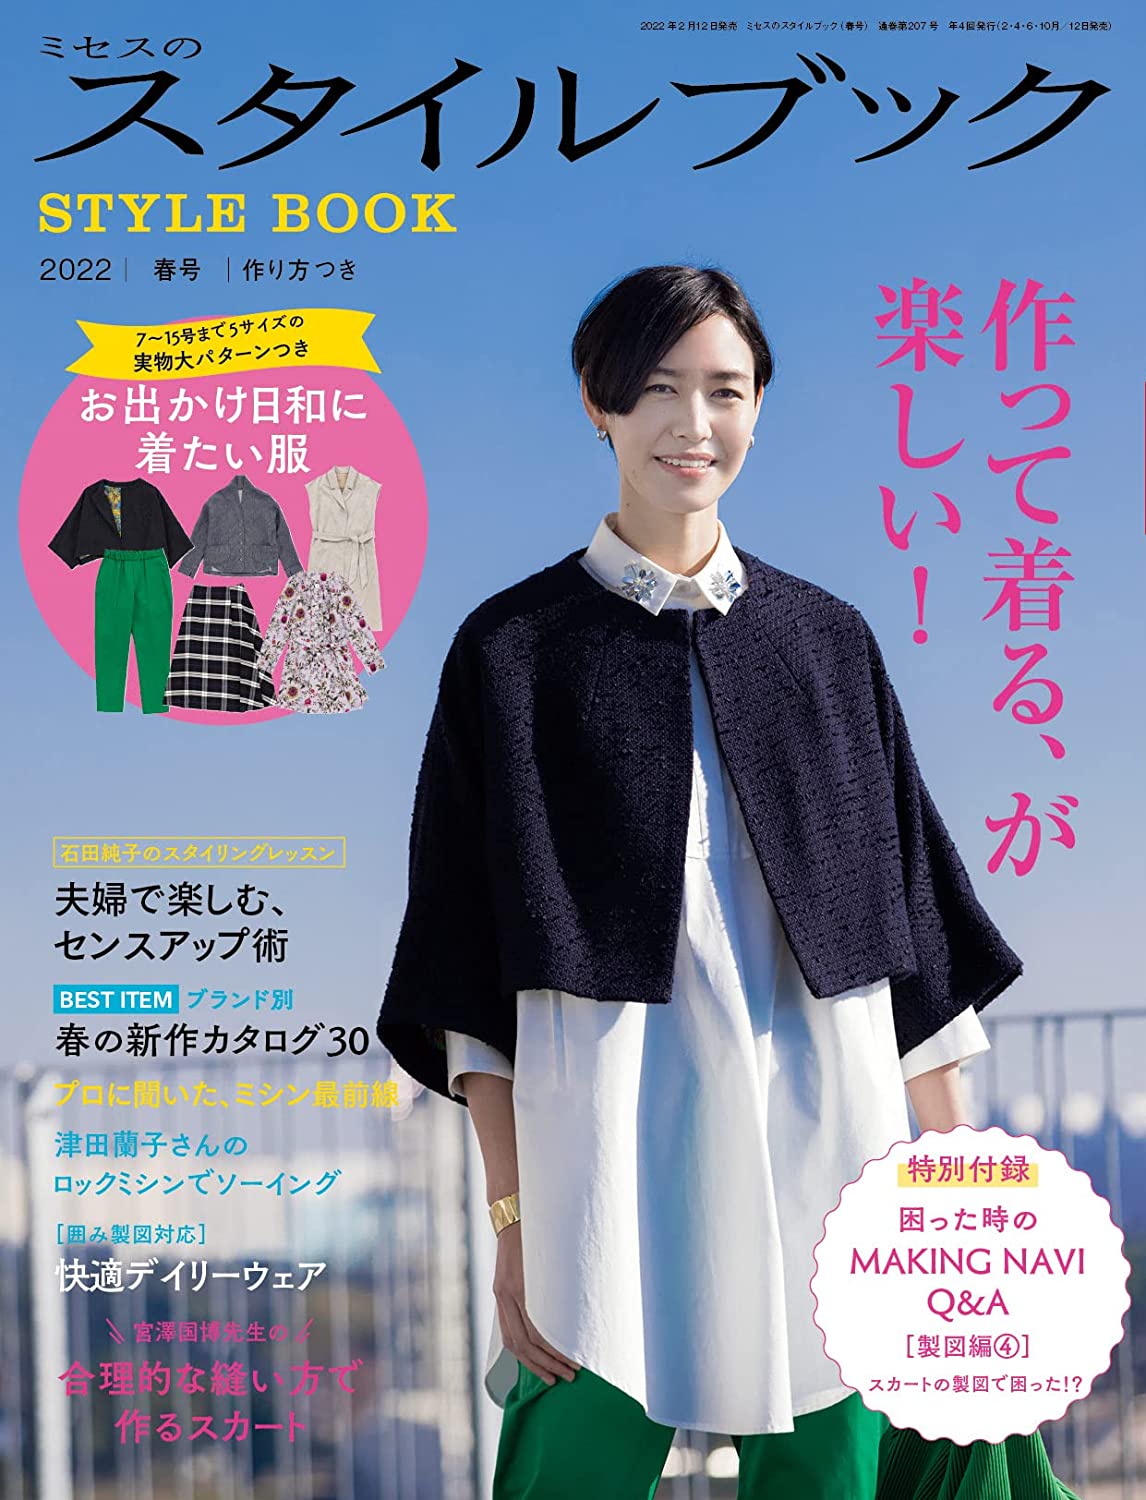 Mrs. Stylebook Spring 2022 (Magazine)